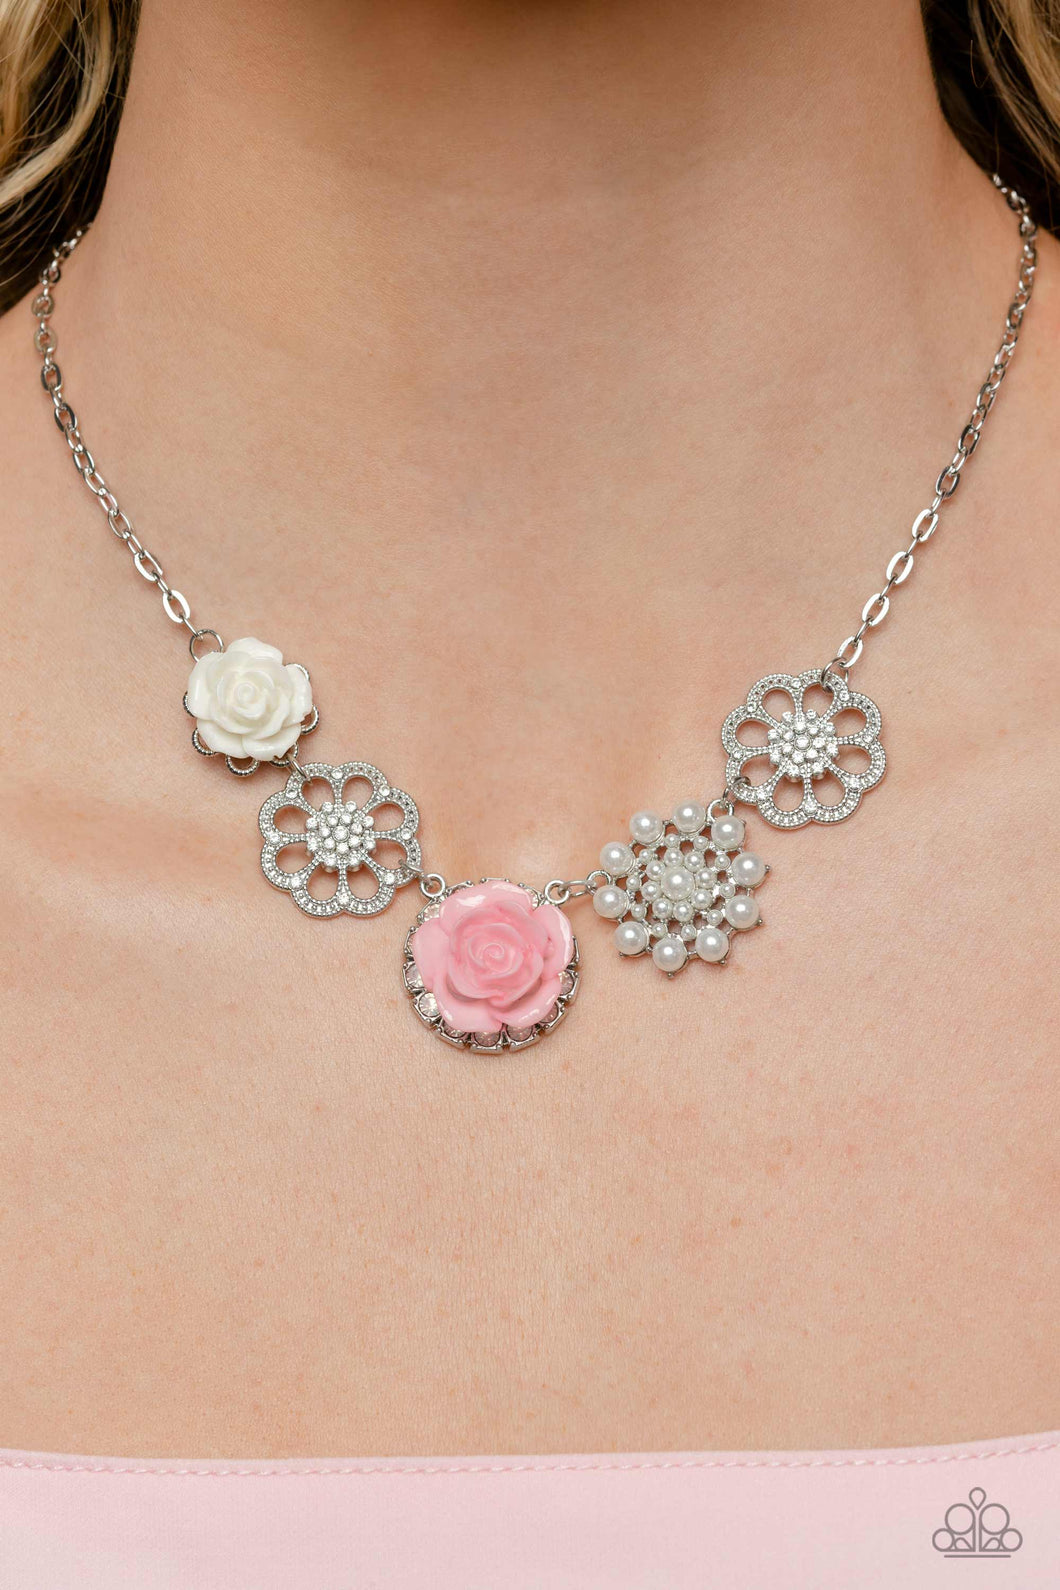 Paparazzi “Tea Party Favors” Pink Necklace Earring Set - Cindysblingboutique